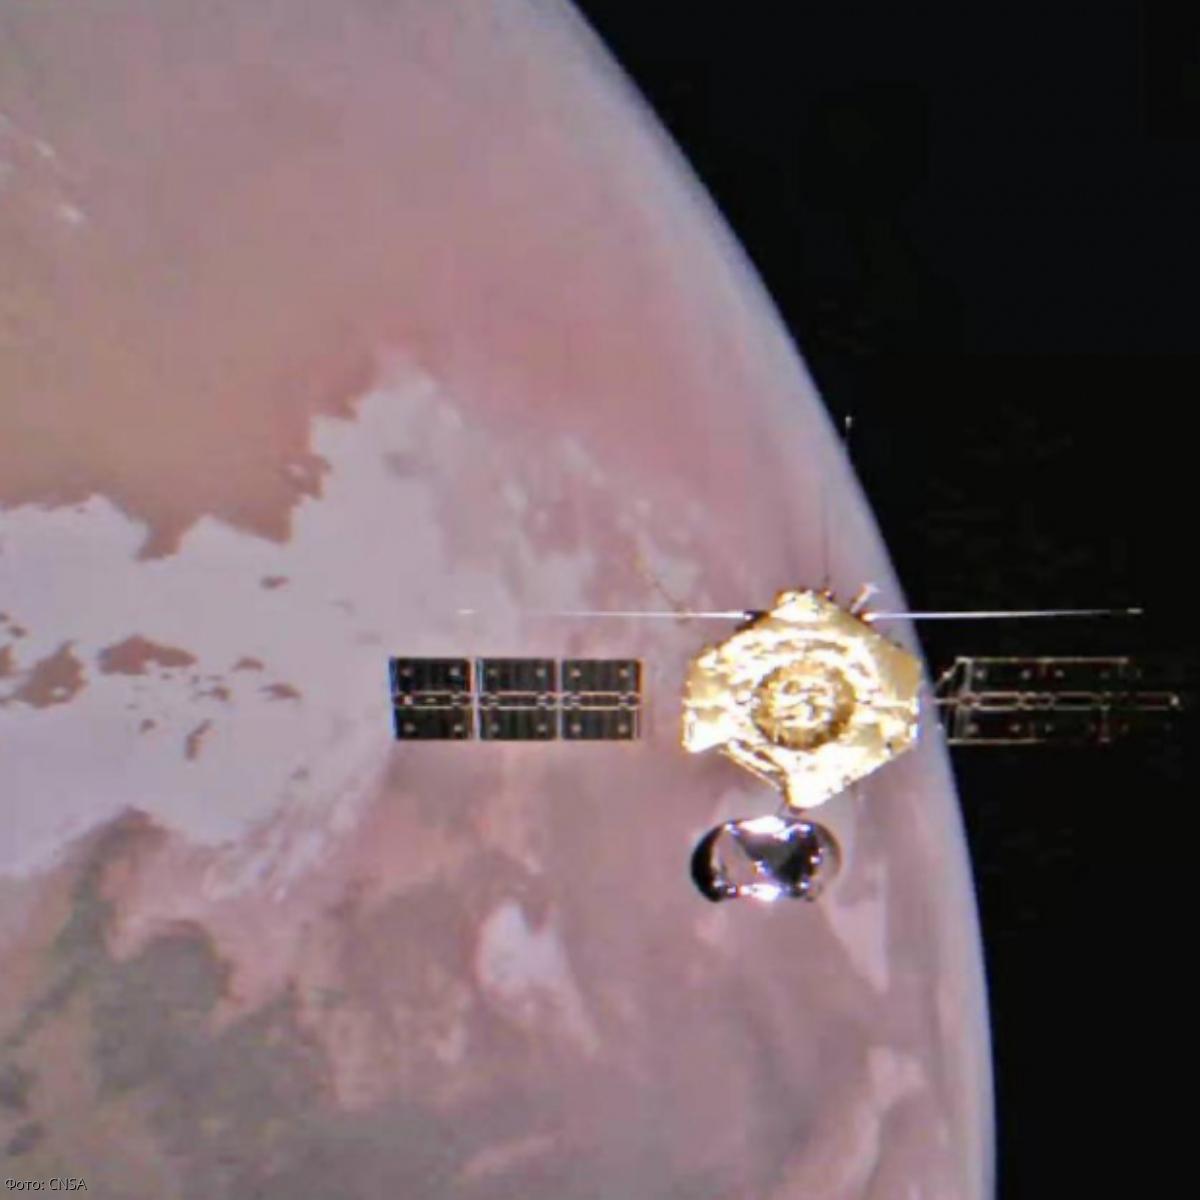 Орбитальный аппарат китайской миссии «Тяньаньмэнь-1» прислал захватывающие дух снимки Марса